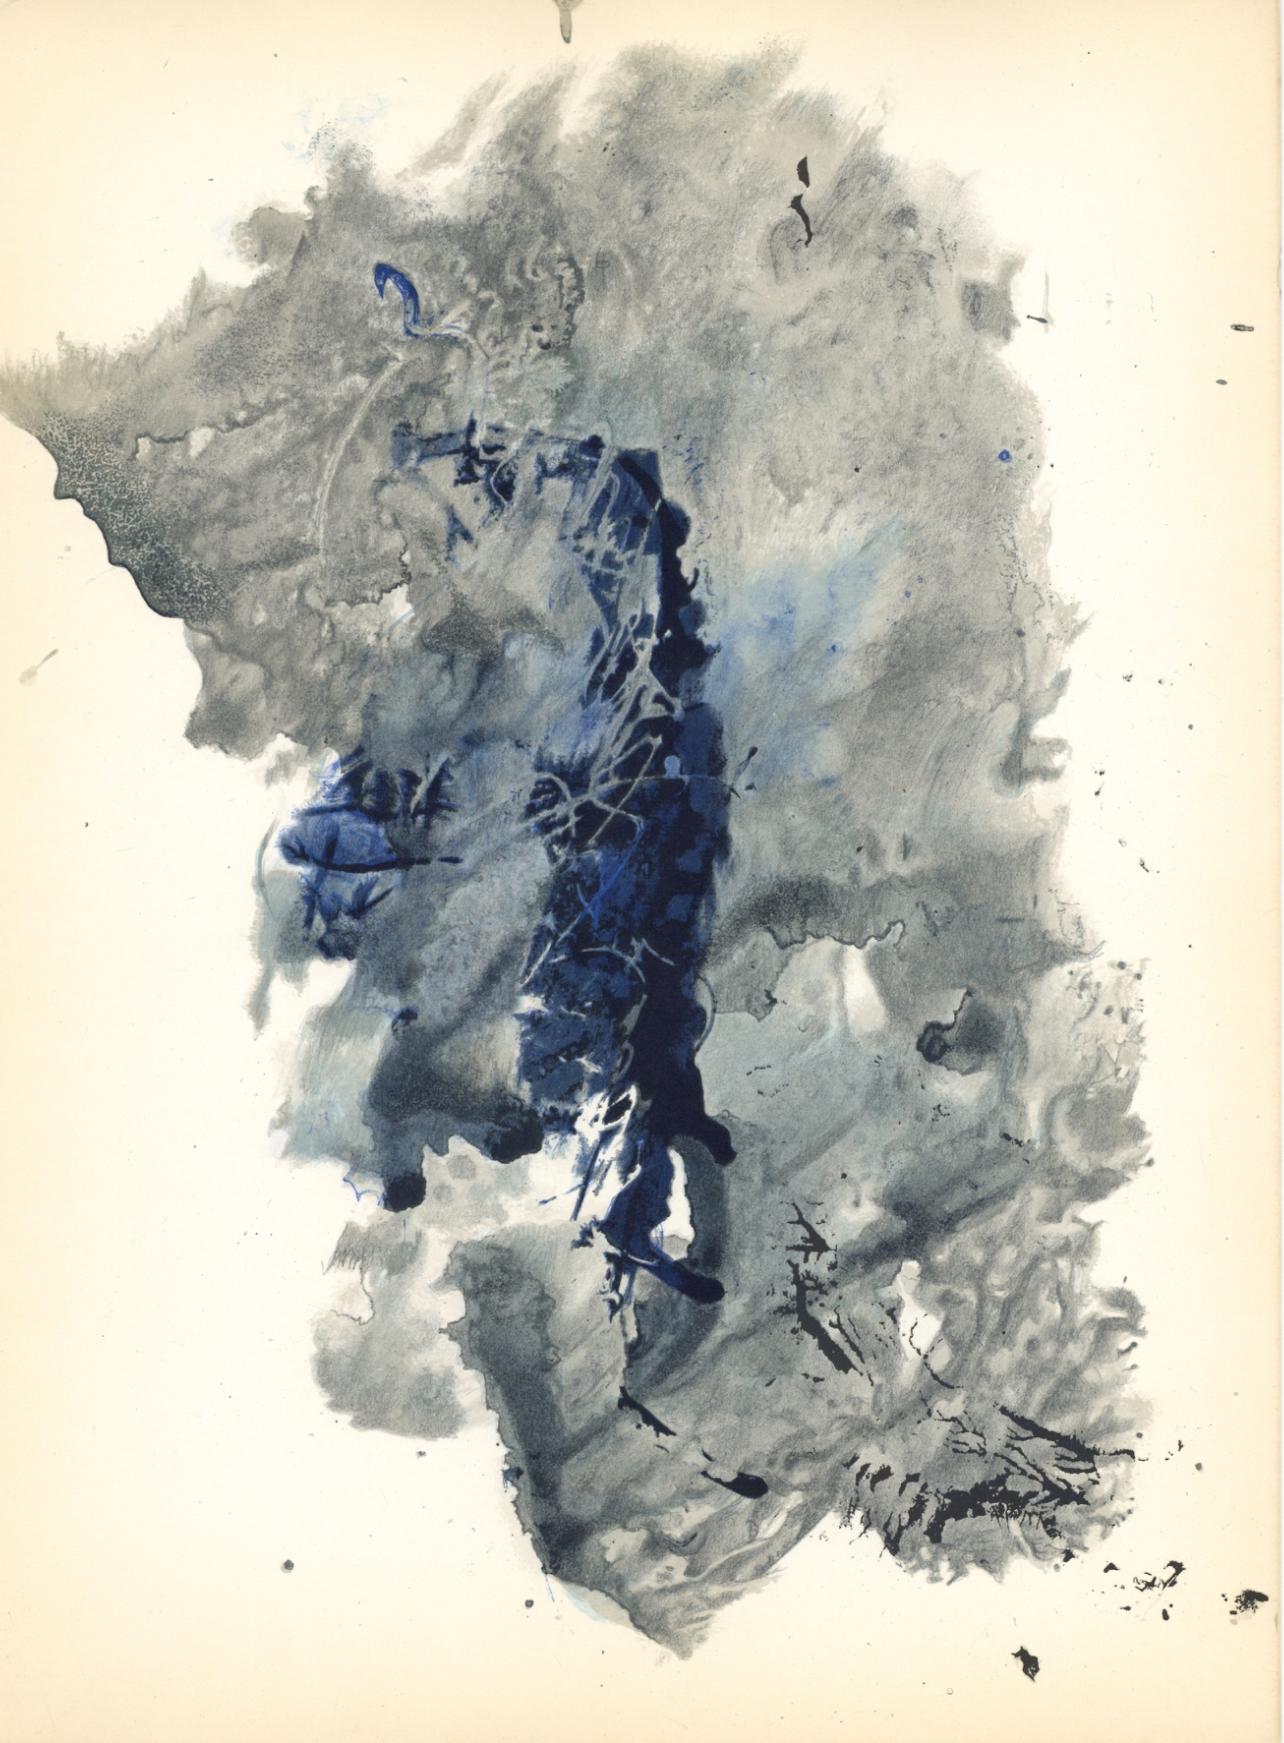 François Fiedler Abstract Print - Fiedler, Composition, Derrière le miroir (after)